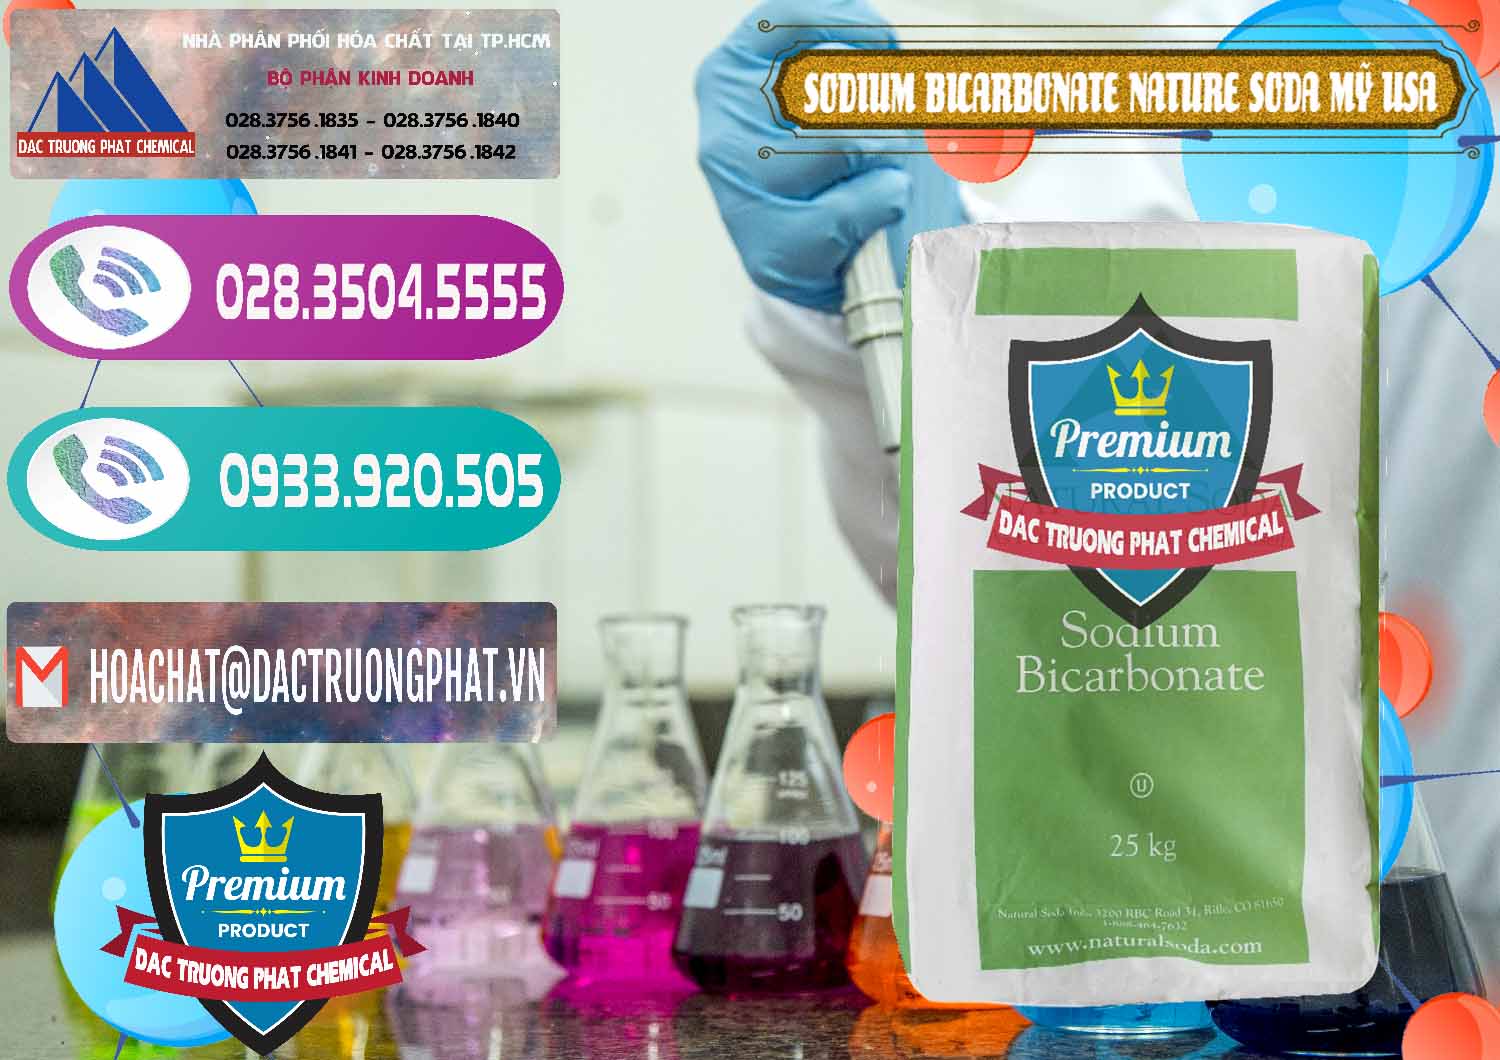 Công ty chuyên phân phối ( bán ) Sodium Bicarbonate – Bicar NaHCO3 Food Grade Nature Soda Mỹ USA - 0256 - Cty chuyên nhập khẩu - cung cấp hóa chất tại TP.HCM - hoachatxulynuoc.com